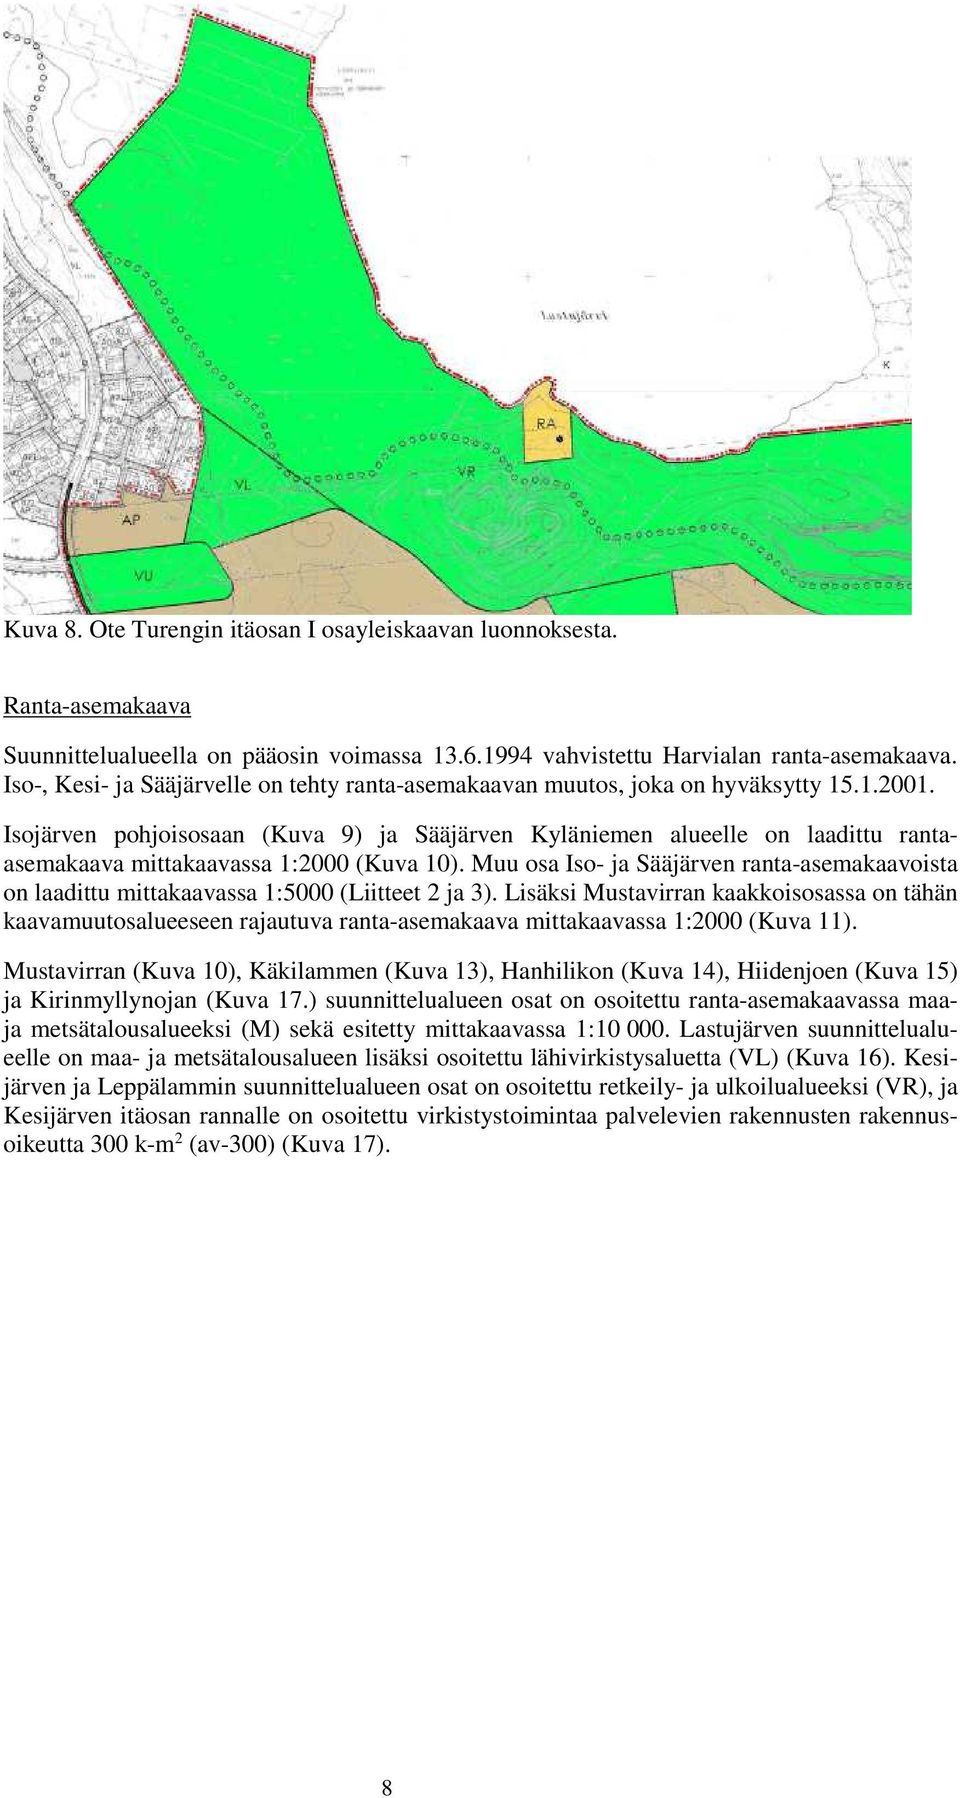 Isojärven pohjoisosaan (Kuva 9) ja Sääjärven Kyläniemen alueelle on laadittu rantaasemakaava mittakaavassa 1:2000 (Kuva 10).